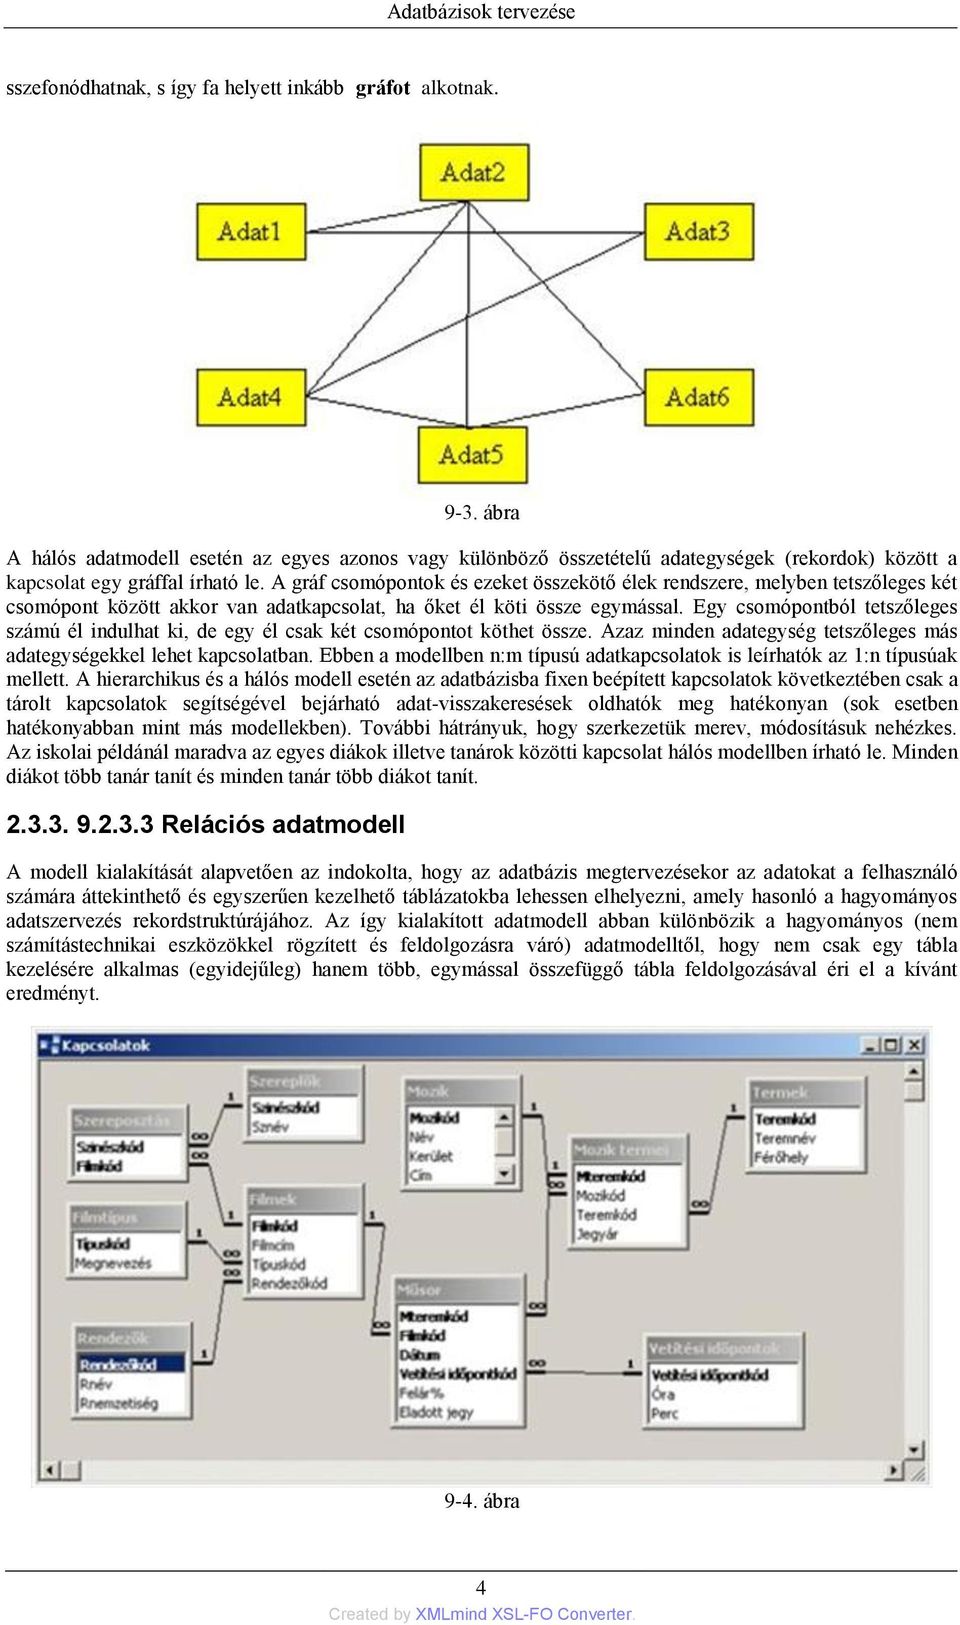 Informatika 9. Adatbázisok tervezése Dr. Szepesné Stiftinger, Mária - PDF  Ingyenes letöltés